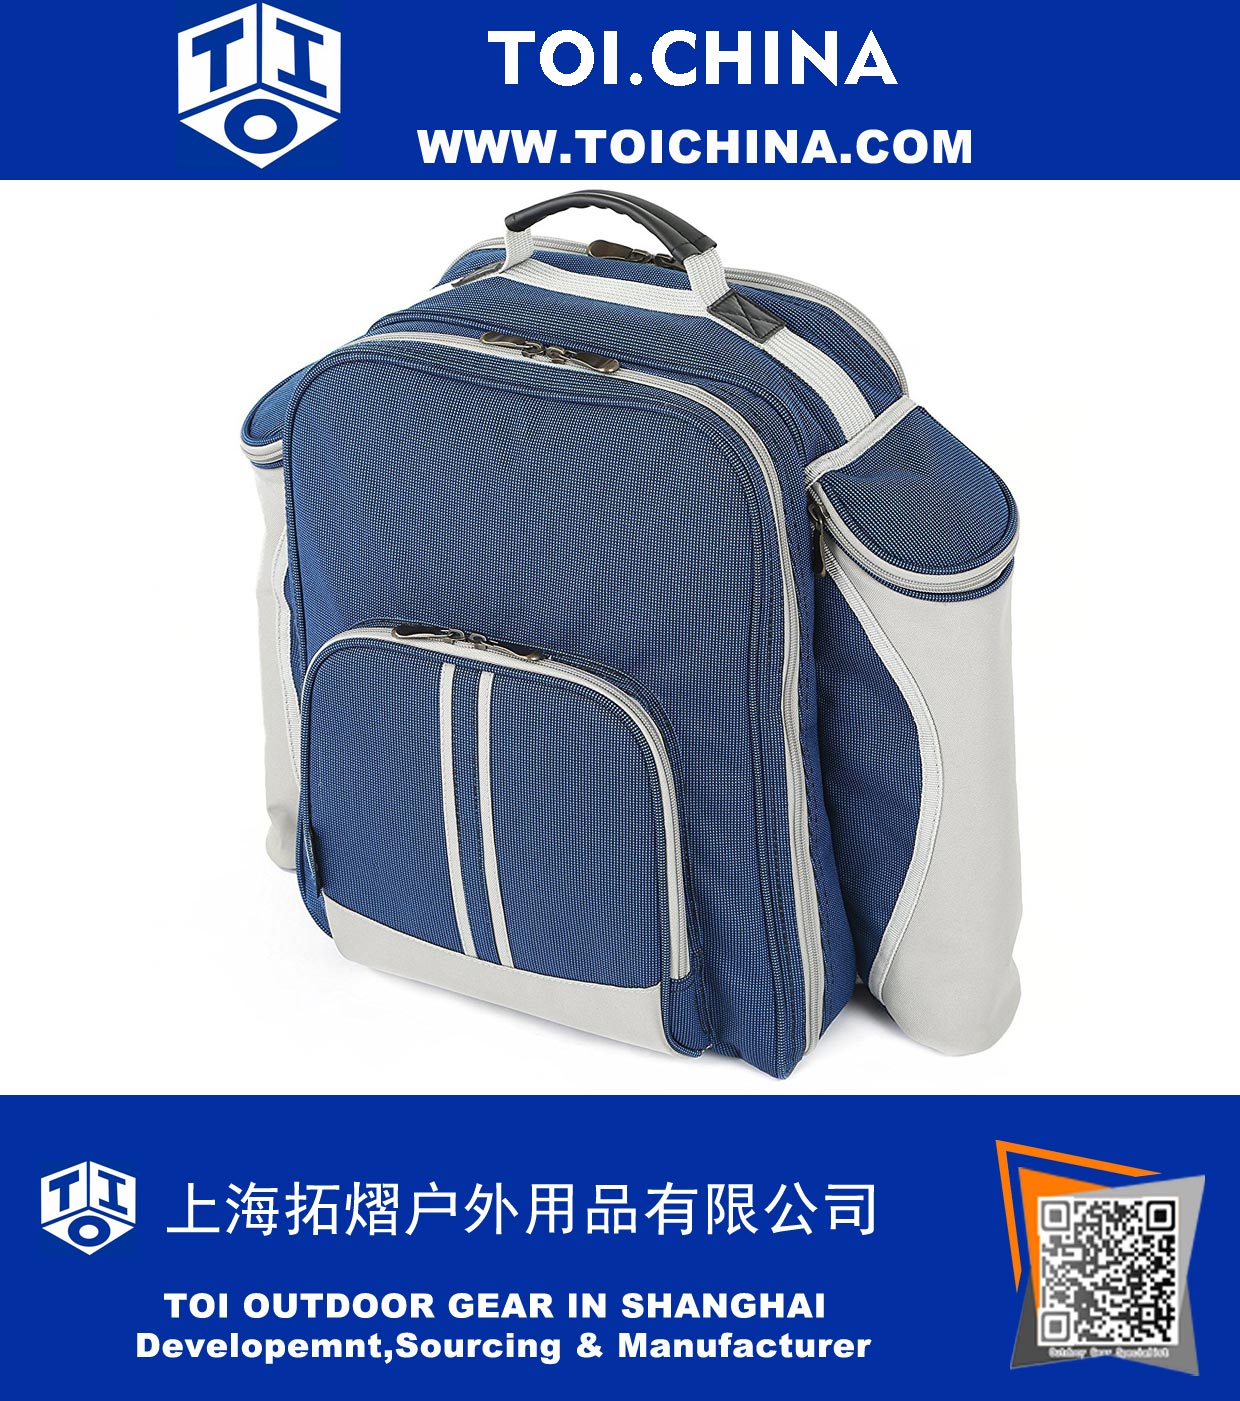 Hamper de mochila de piquenique Deluxe para duas pessoas em Midnight Blue - mochila equipada